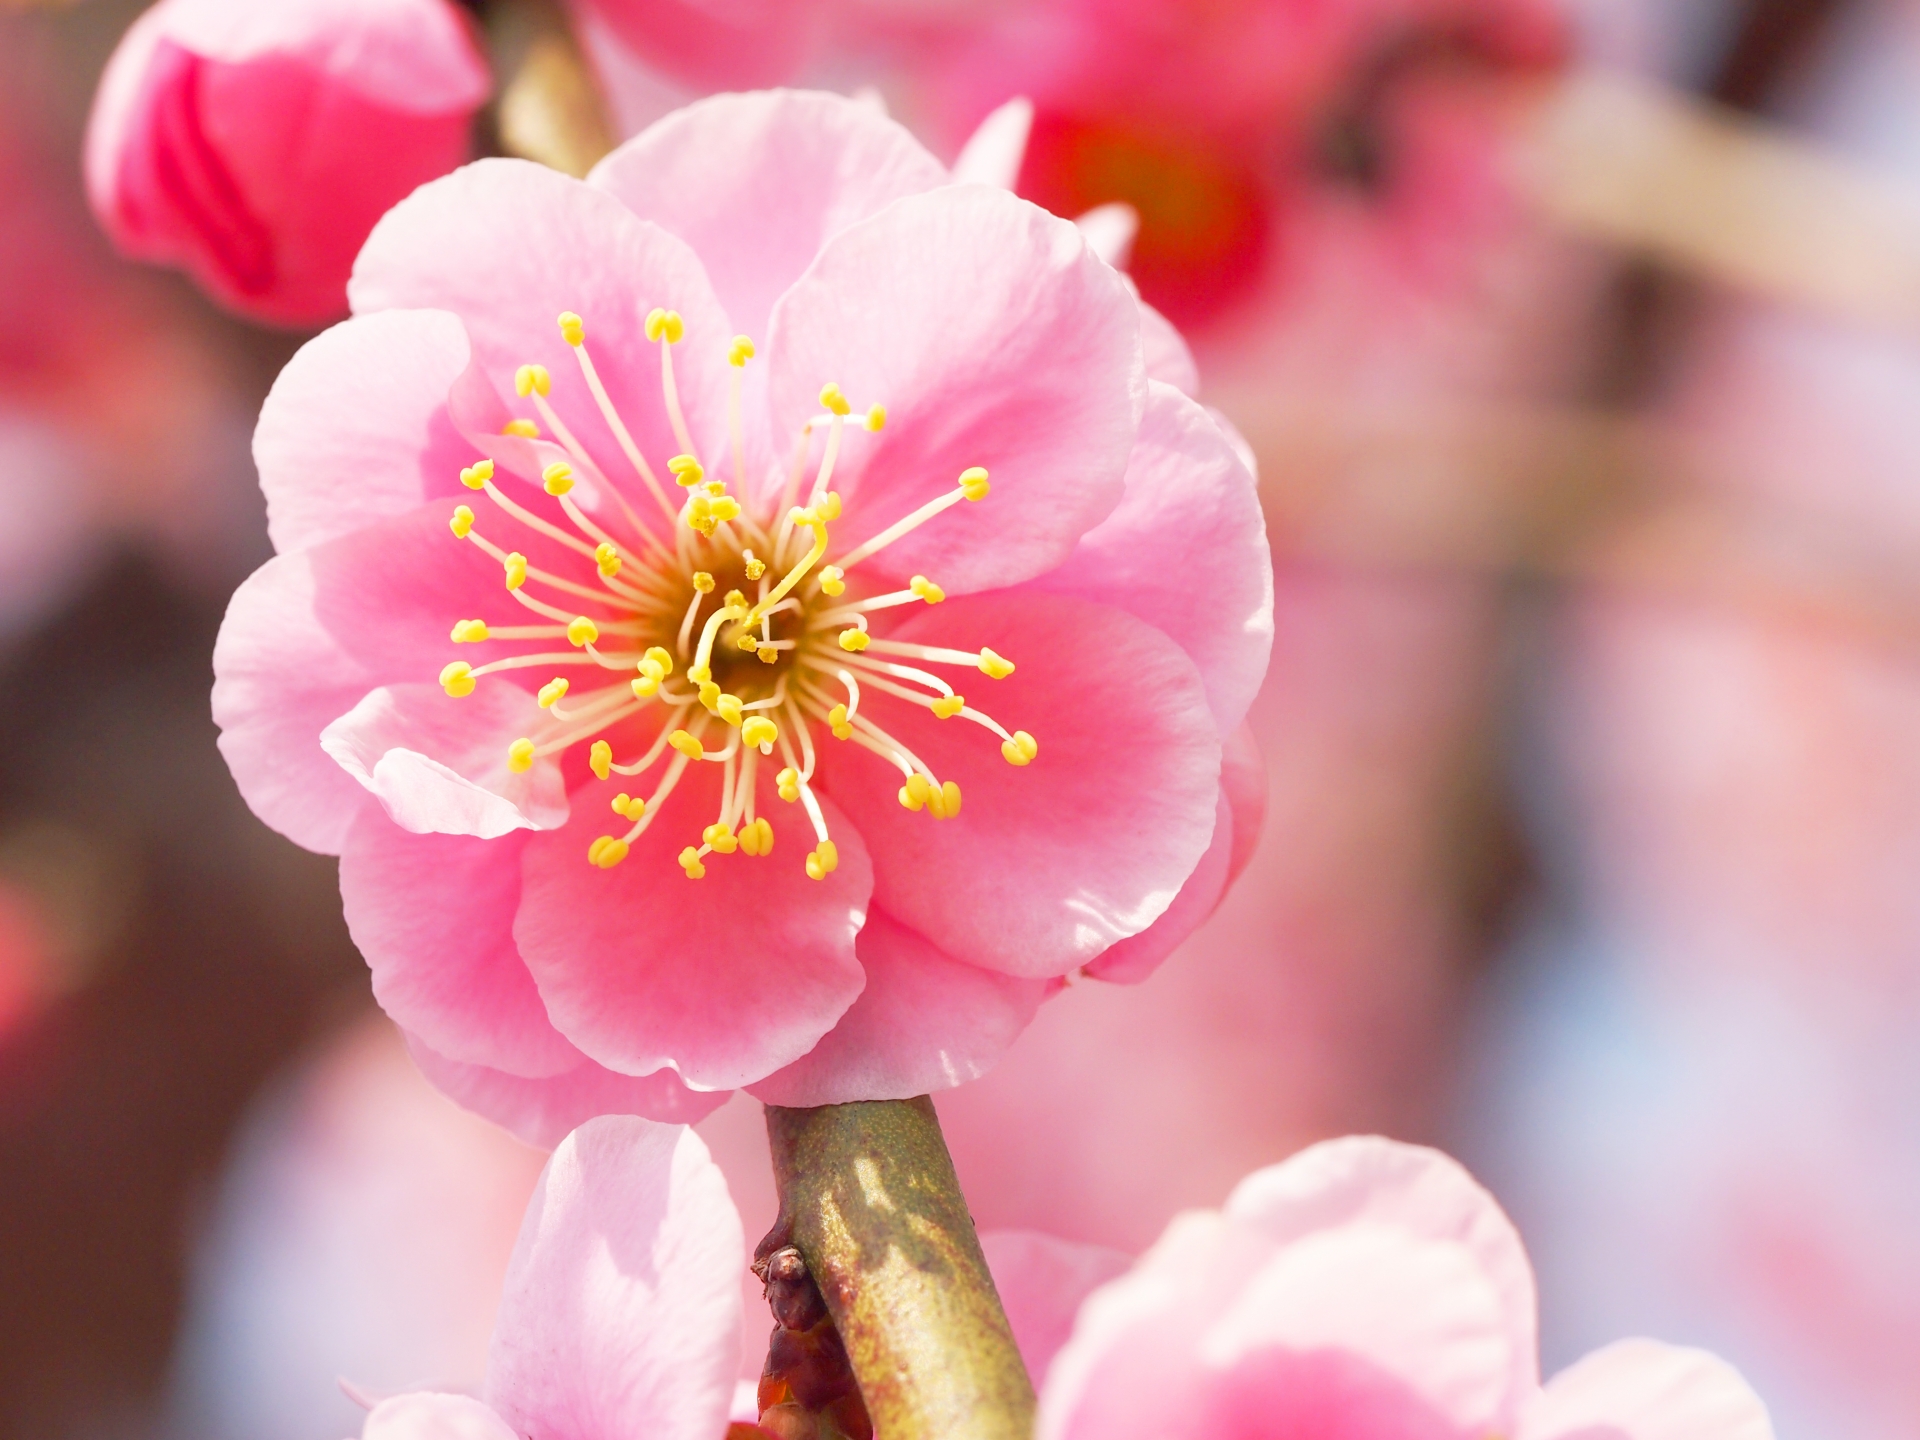 岡村梅林公園の梅21 開花状況や梅まつりなど紹介 中止 情報発信ブログサイト Blue Rose